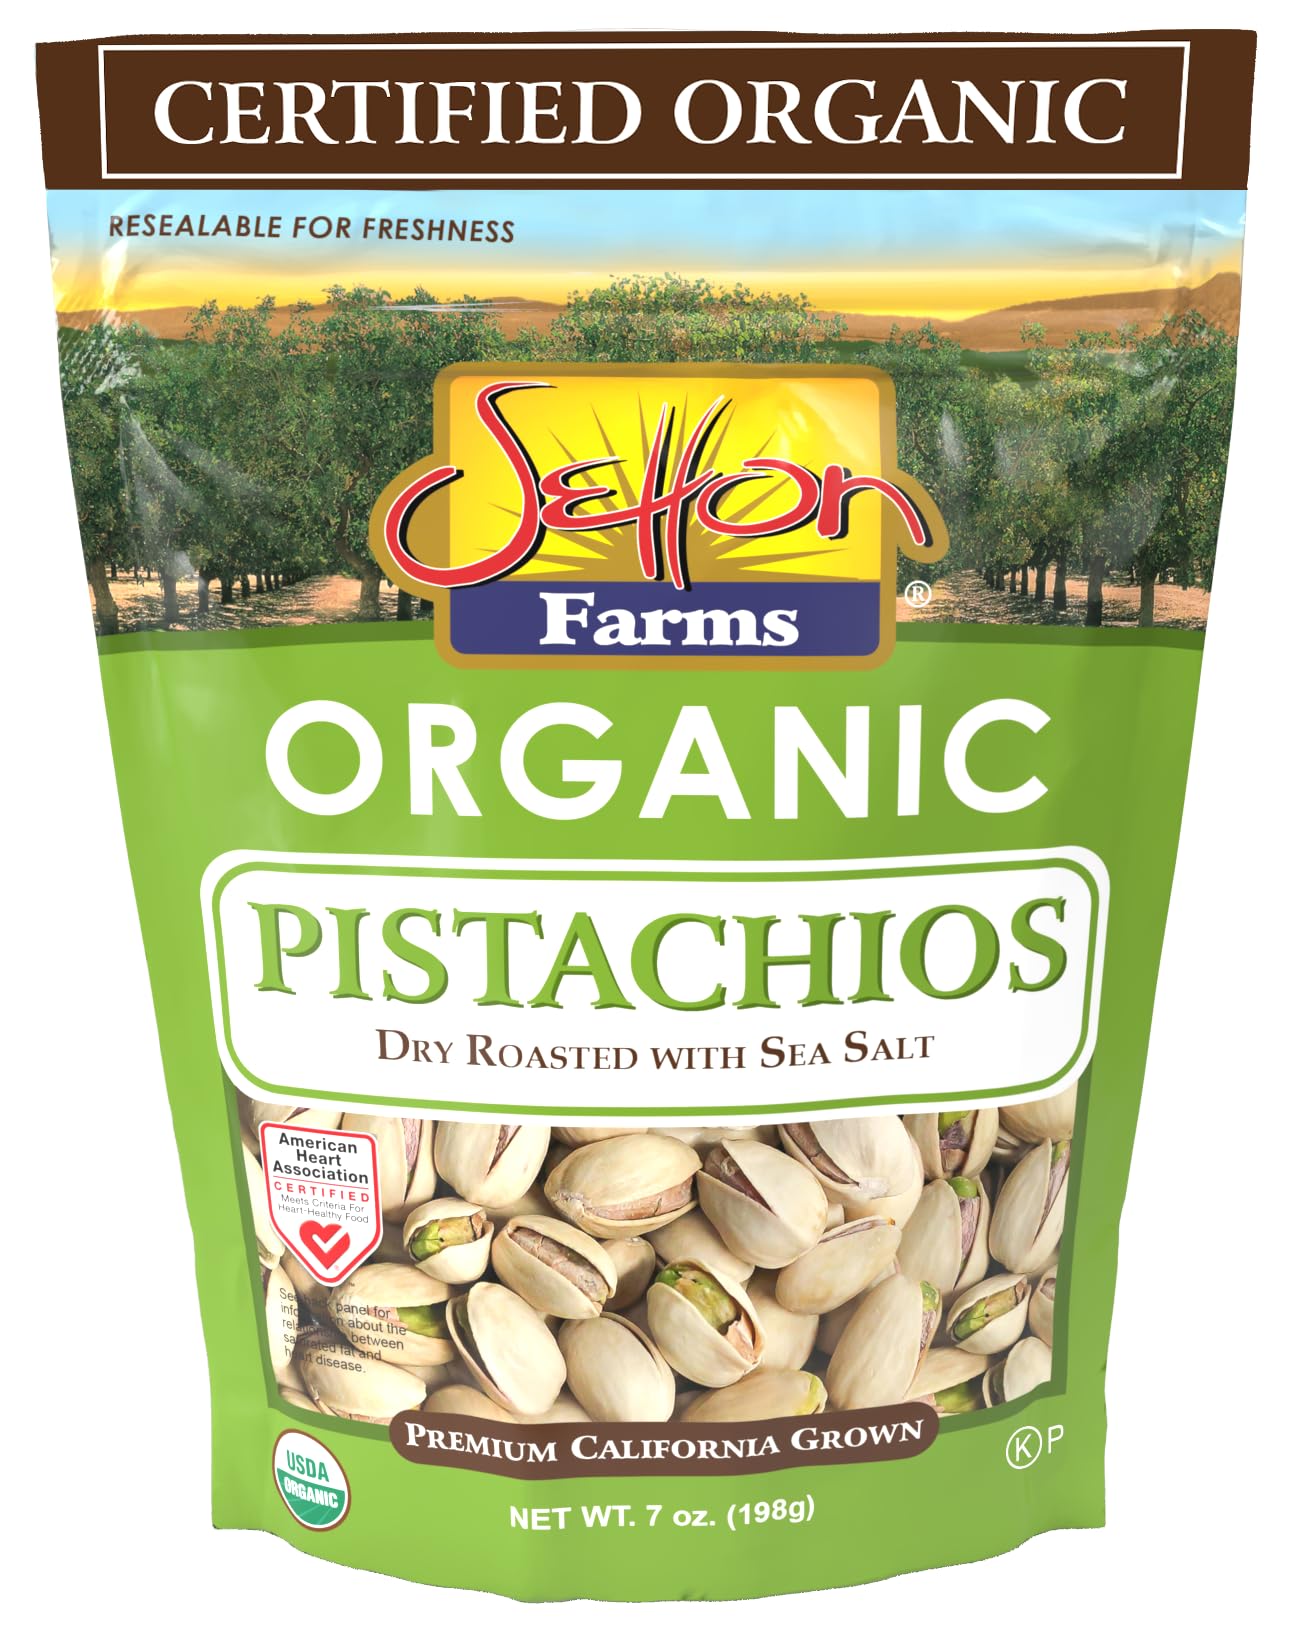 Setton Farms Pistachio Organic - 7 Oz Resealable Display Shipper